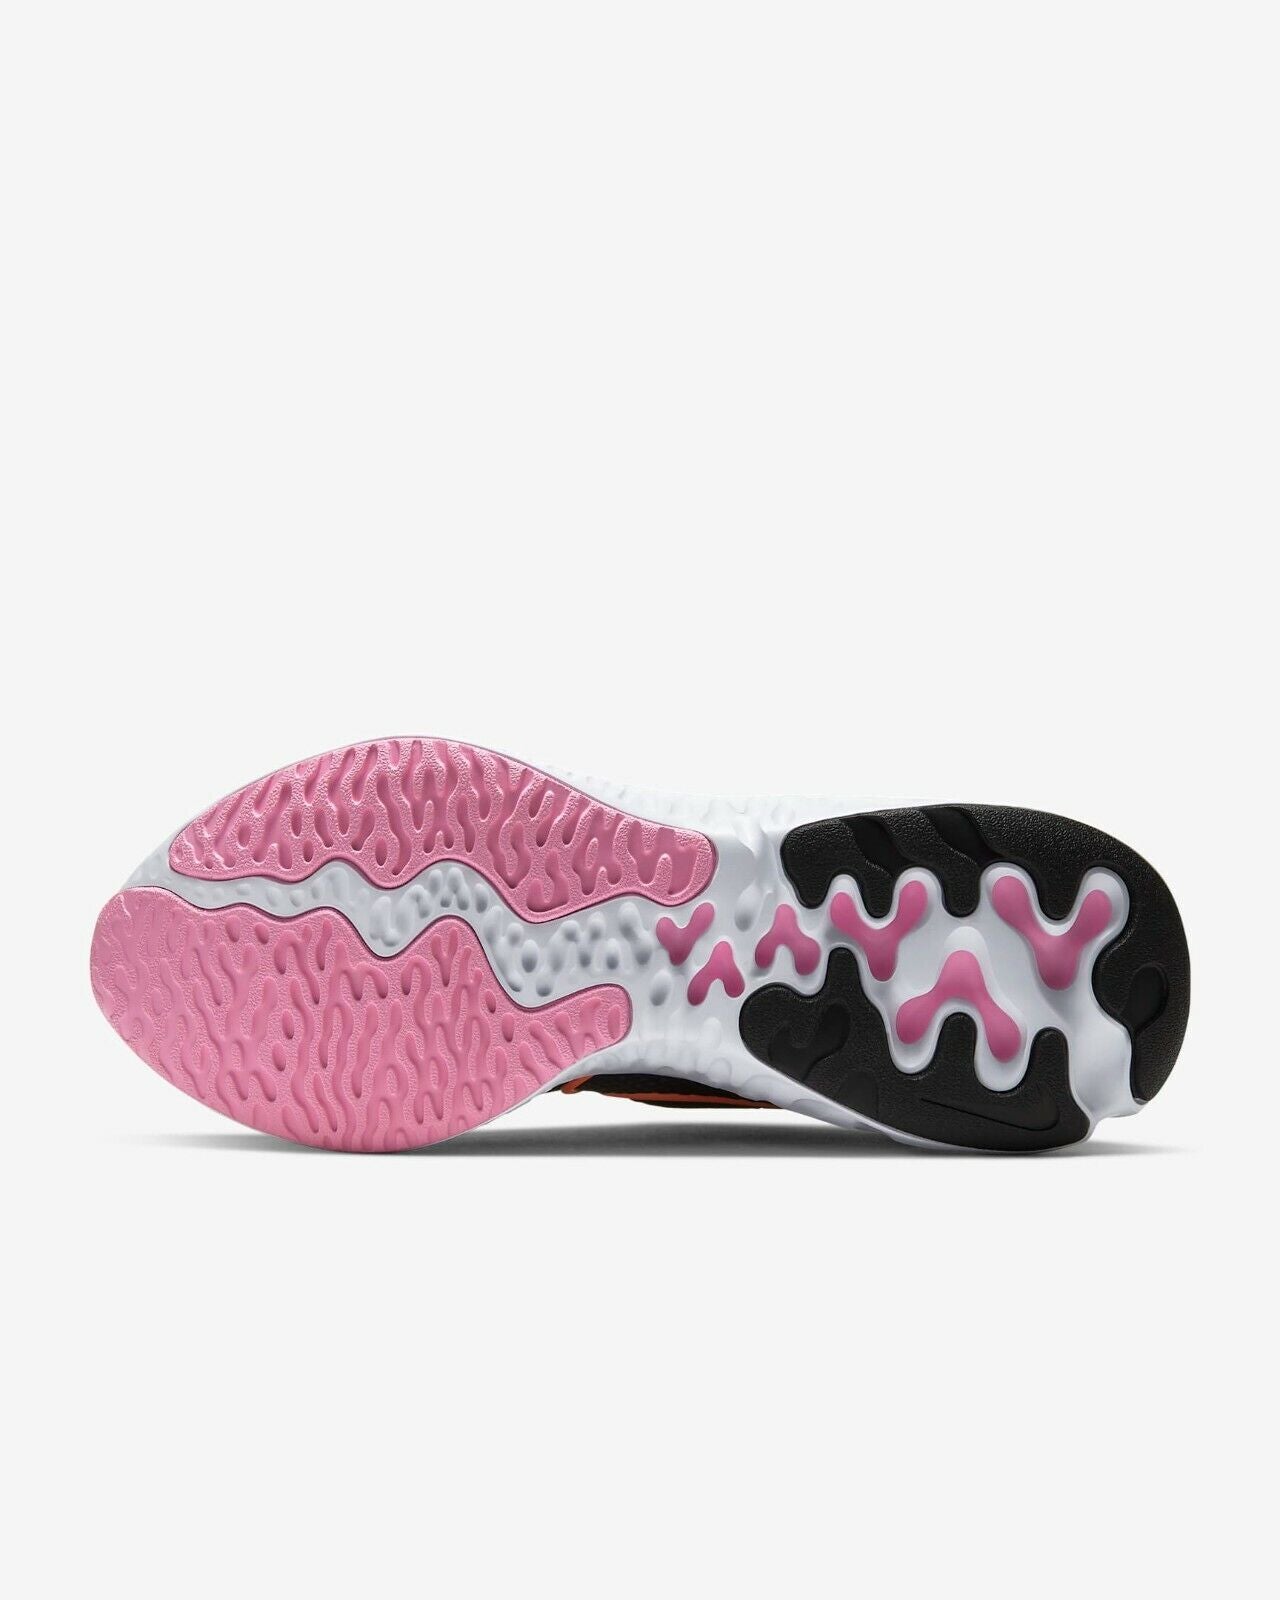 Women's Nike Renew Run Running Shoes, CK6360 001 Multi Sizes Black/Orange Pulse/White/Pink